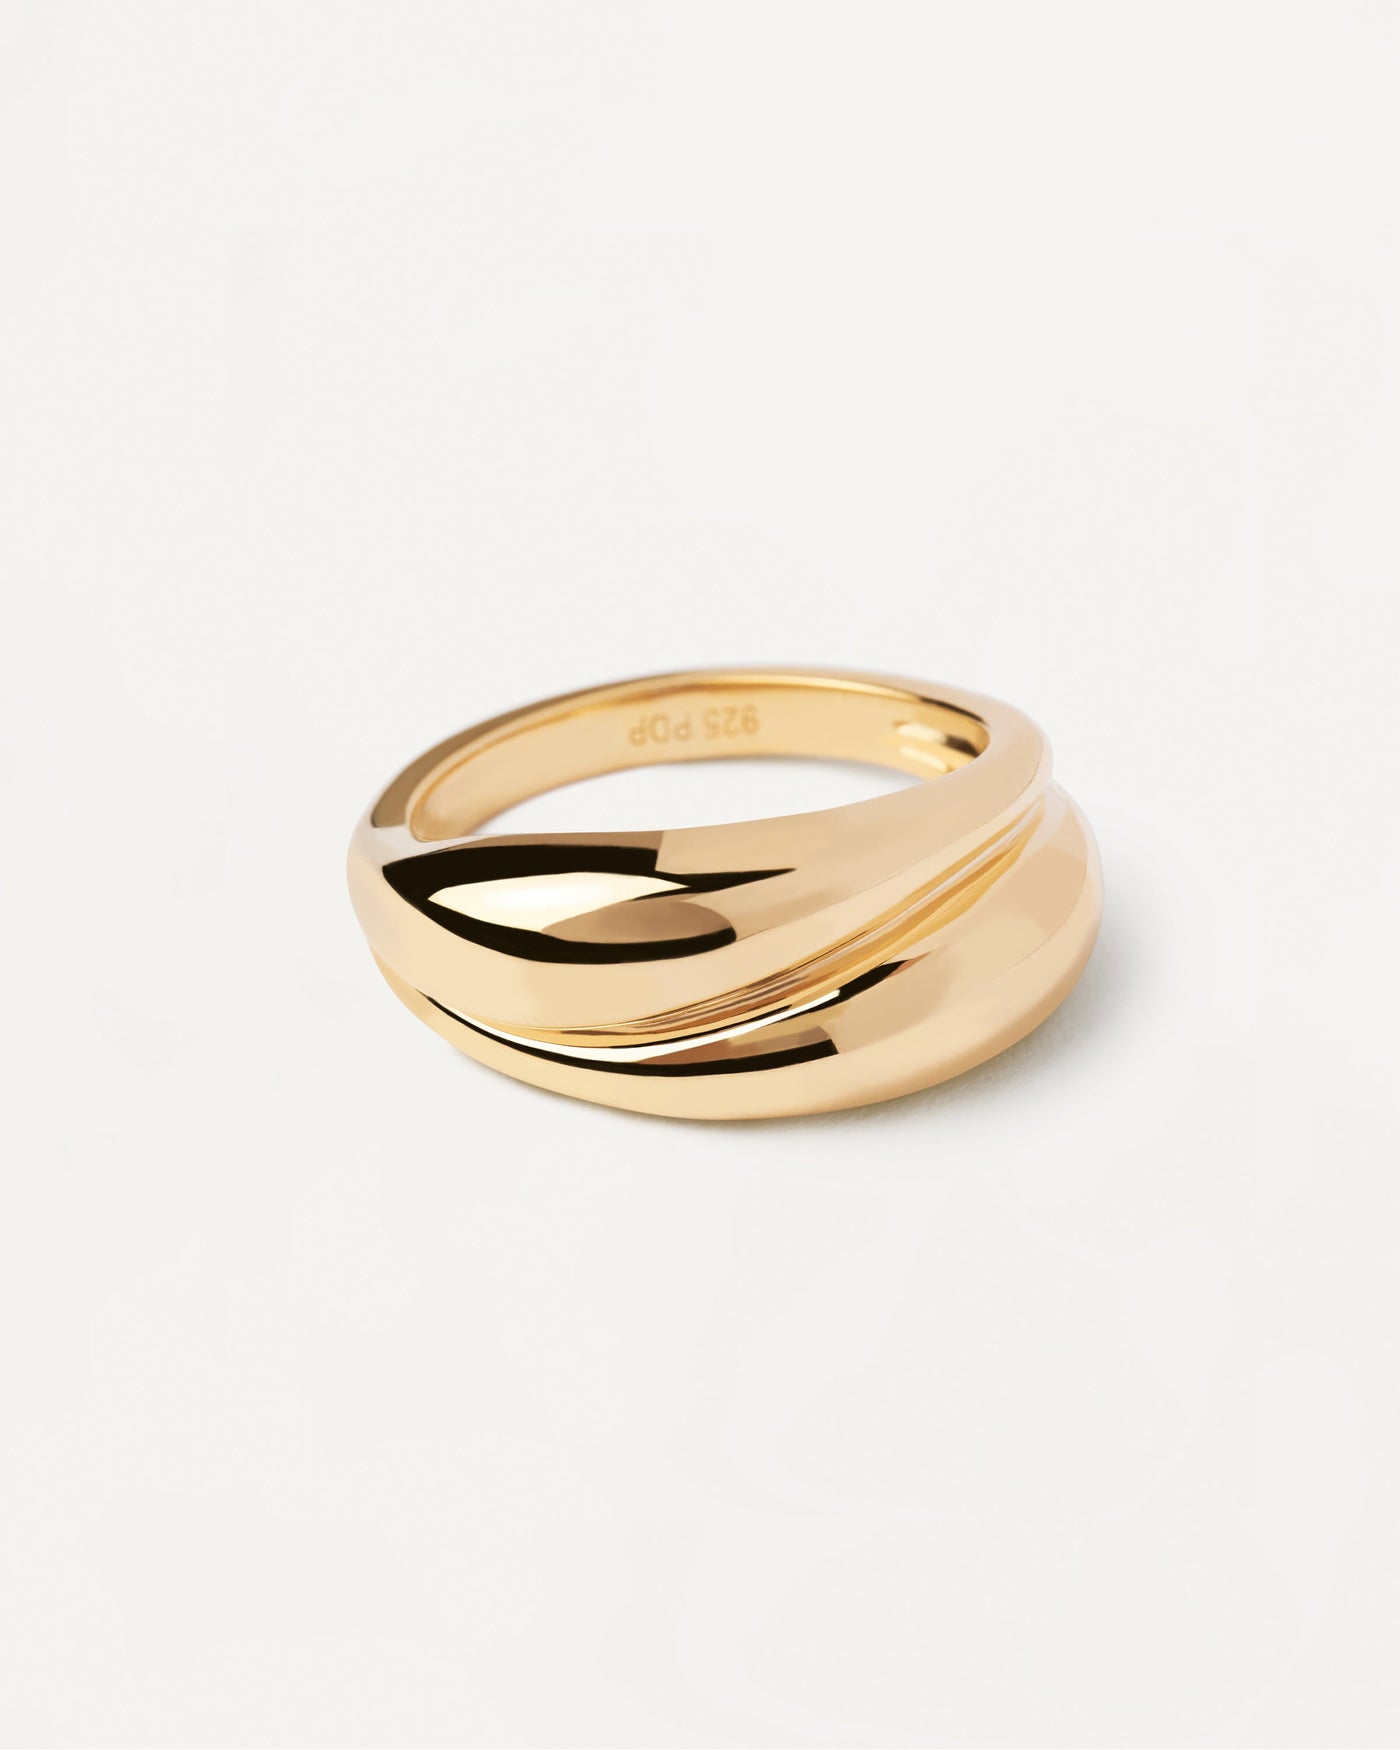 Desire Ring. Gewagter, kurviger Ring aus vergoldetem Sterlingsilber. Erhalten Sie die neuesten Produkte von PDPAOLA. Geben Sie Ihre Bestellung sicher auf und erhalten Sie diesen Bestseller.